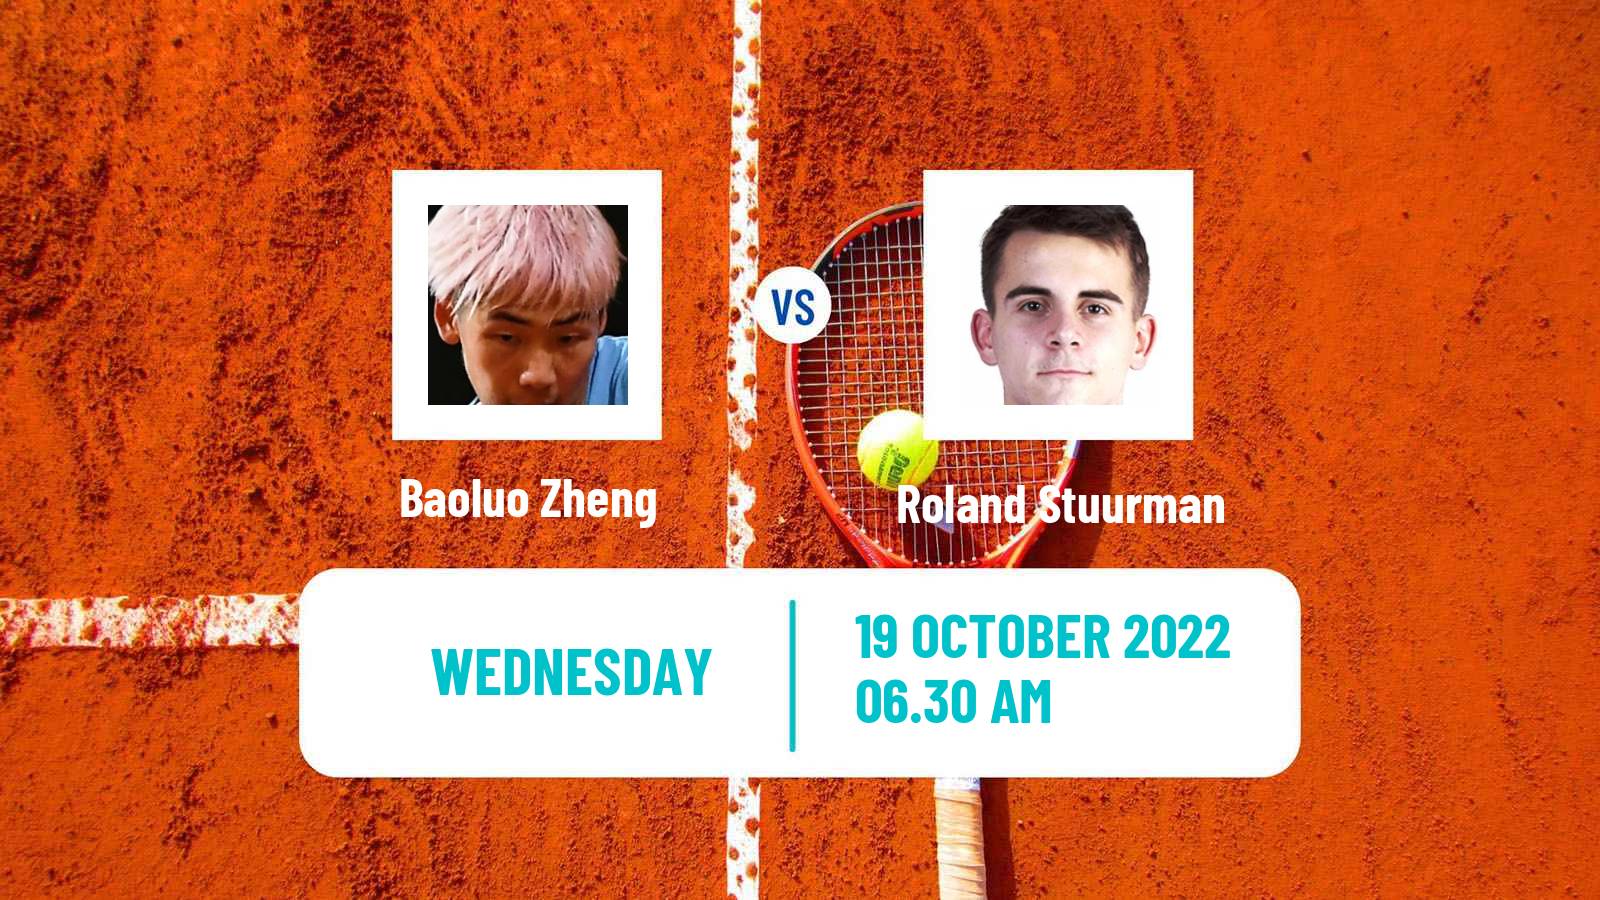 Tennis ITF Tournaments Baoluo Zheng - Roland Stuurman